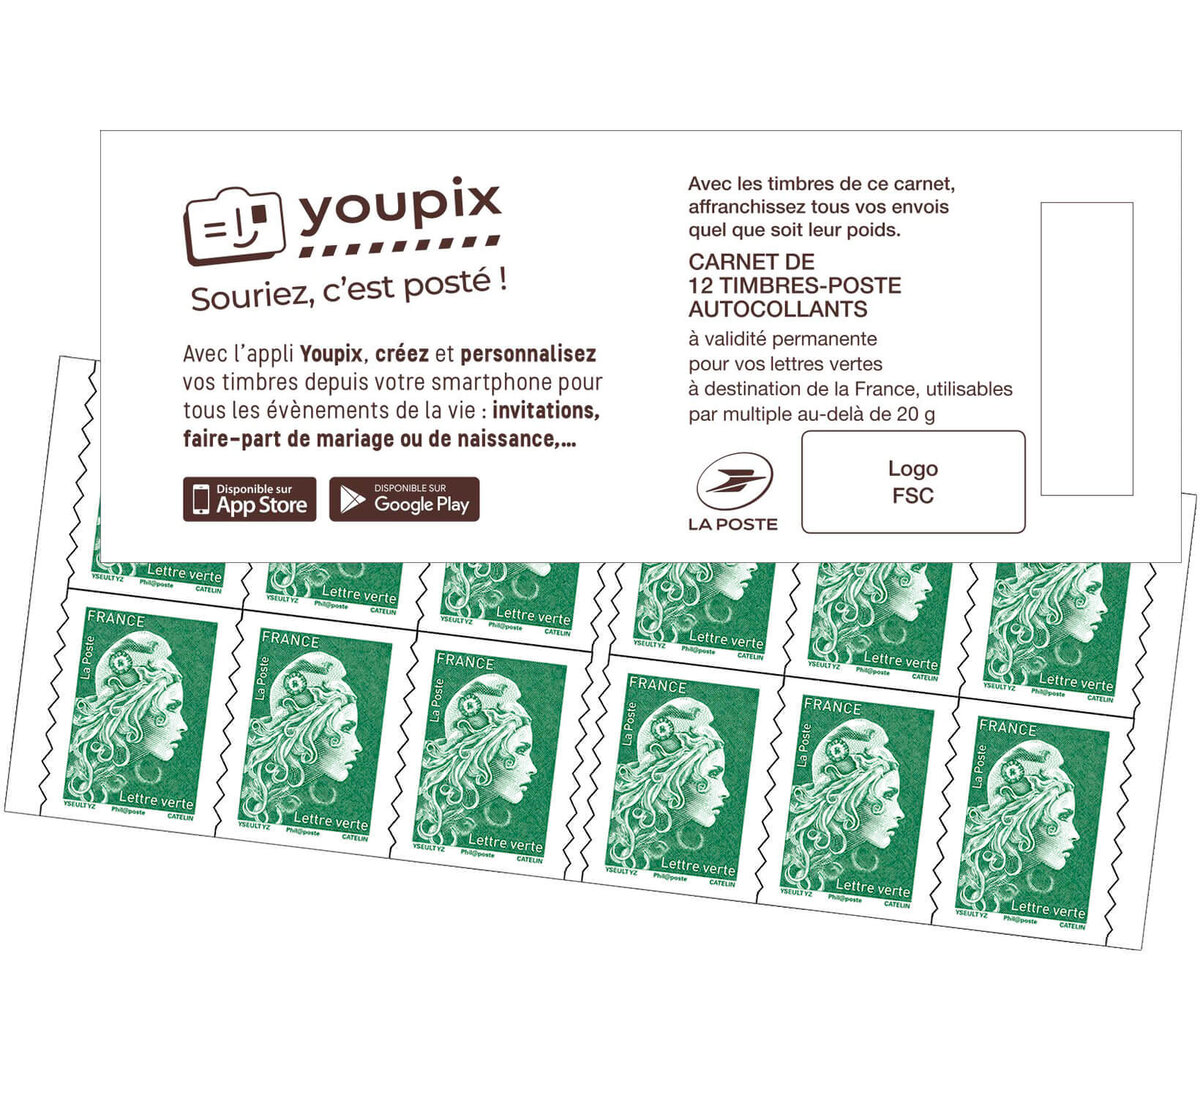 Carnet 10 timbres Marianne l'engagée - Lettre verte - Cdiscount